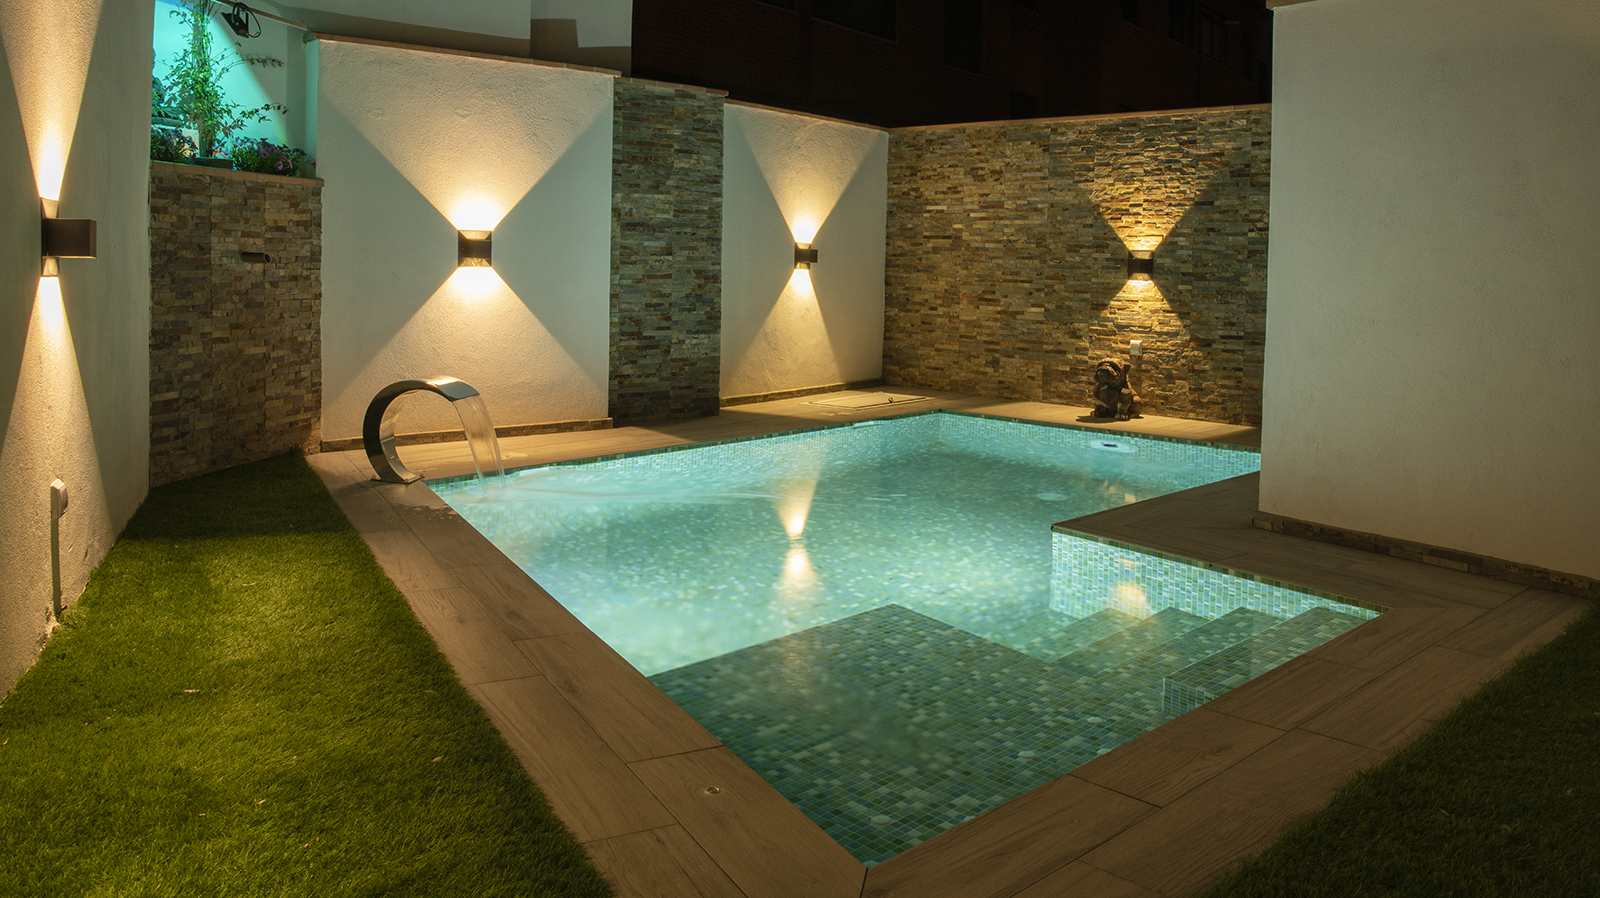 Sencilla y coqueta piscina en patio interior de vivienda en vista nocturna